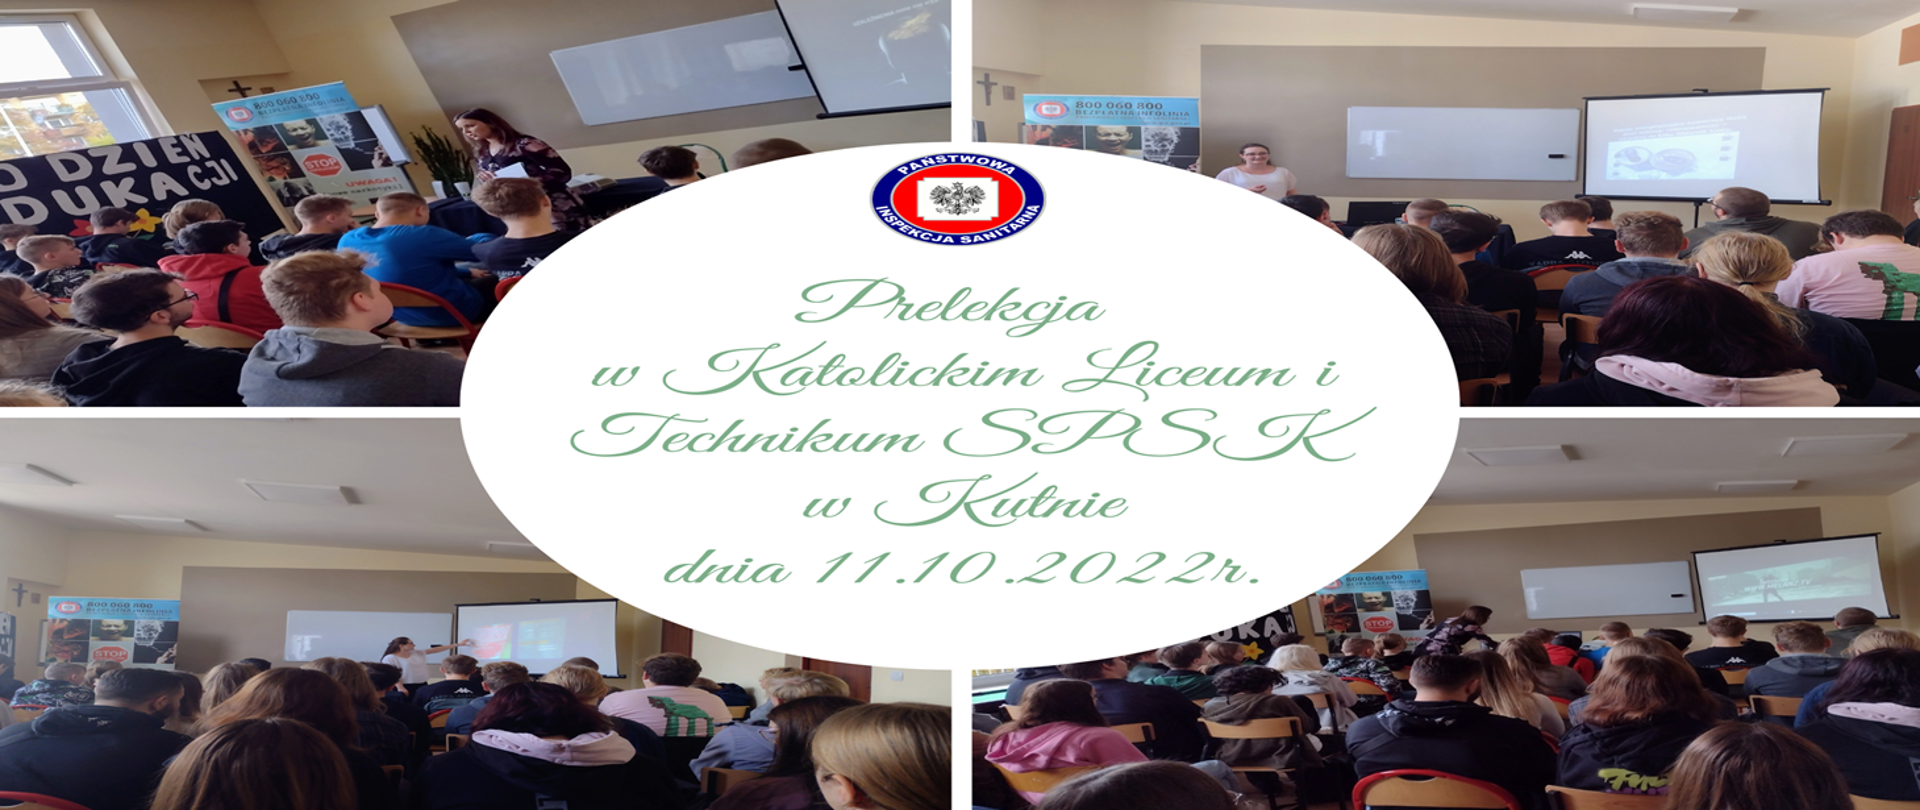 Prelekcja w Katolickim Liceum i Technikum SPSK w Kutnie